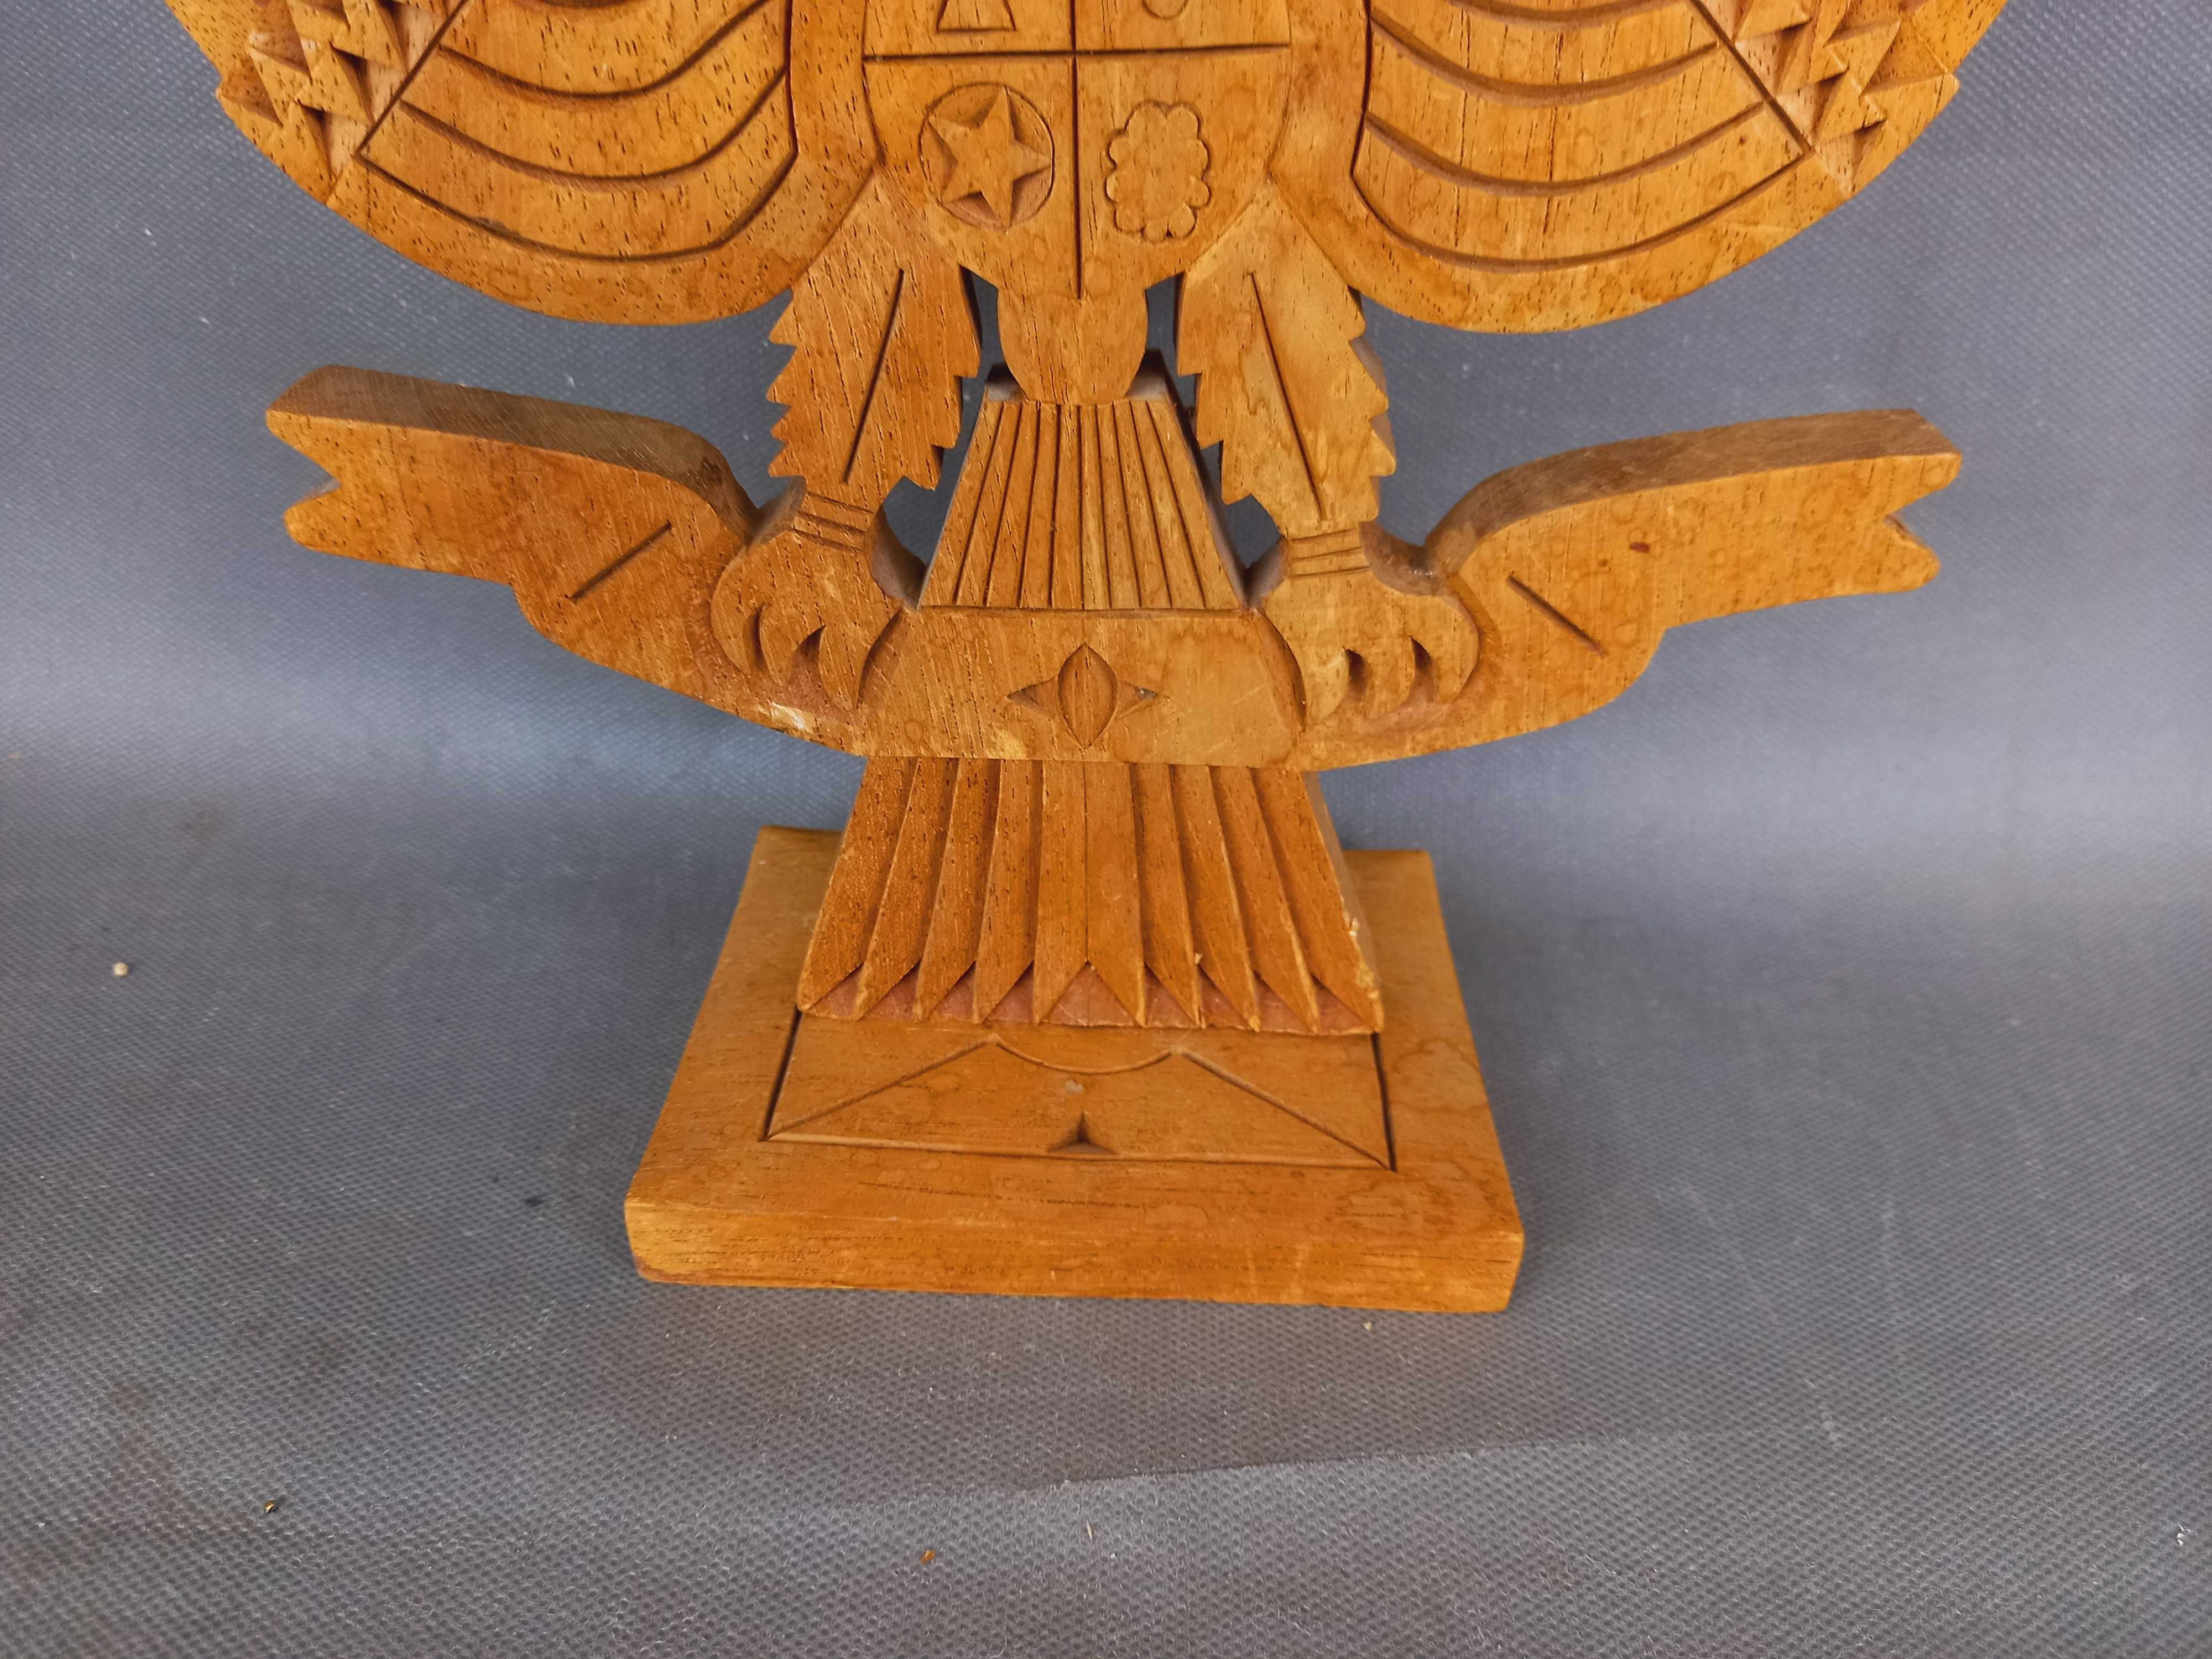 Orzeł, Garuda, rzeźba drewniana, Indonezja wys. 29,5 cm